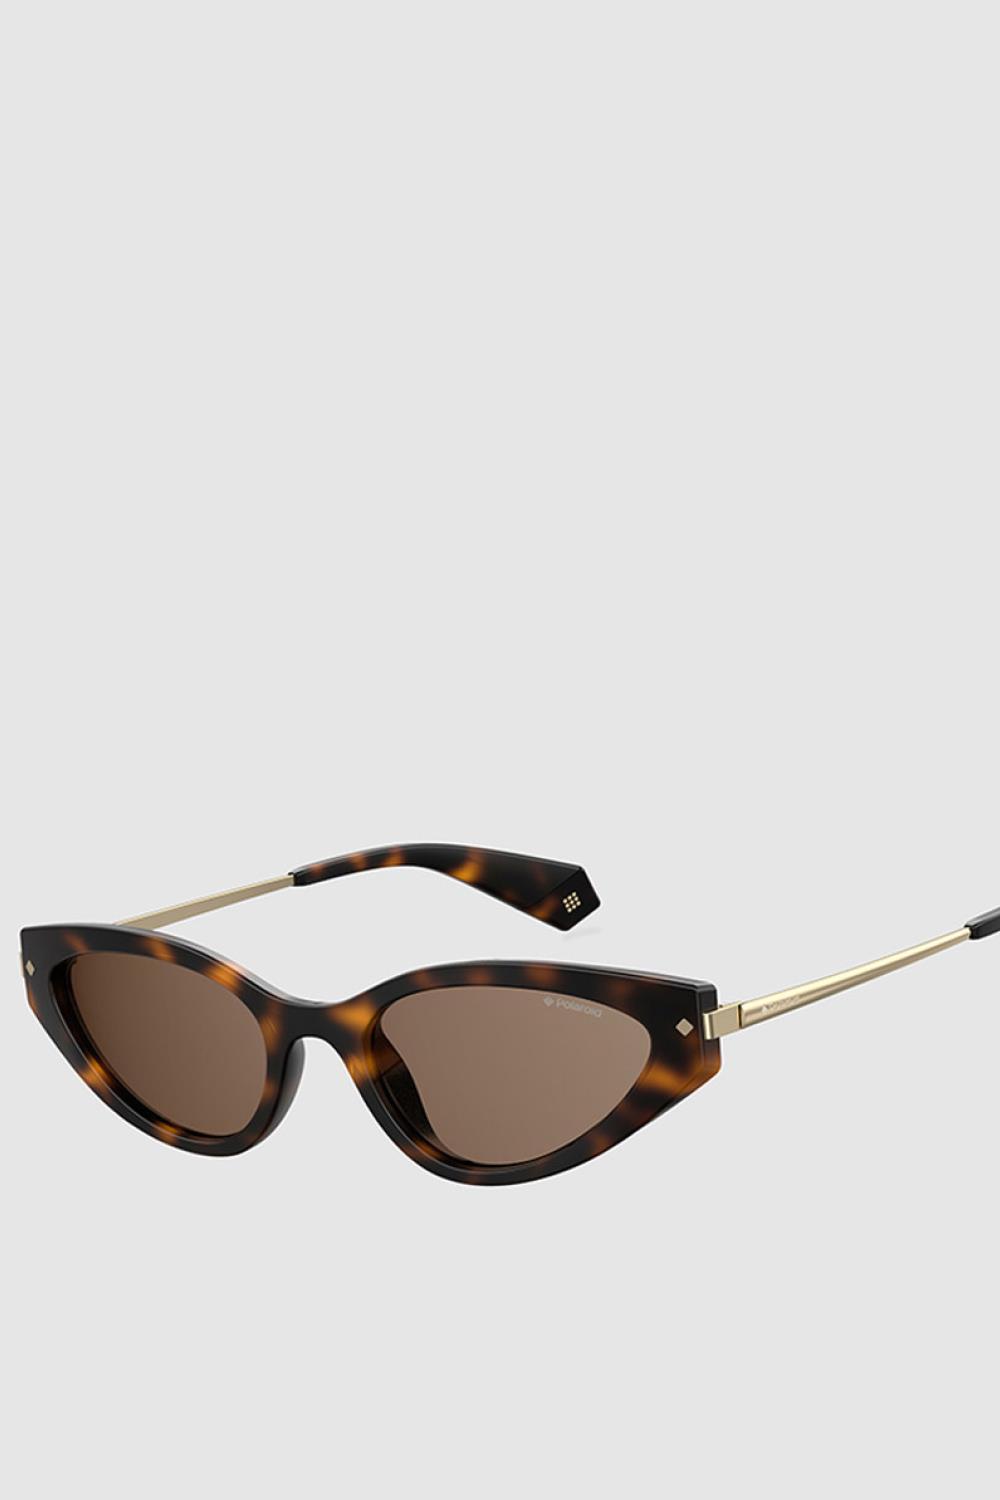 accesorios de moda gafas de sol polaroid 42€